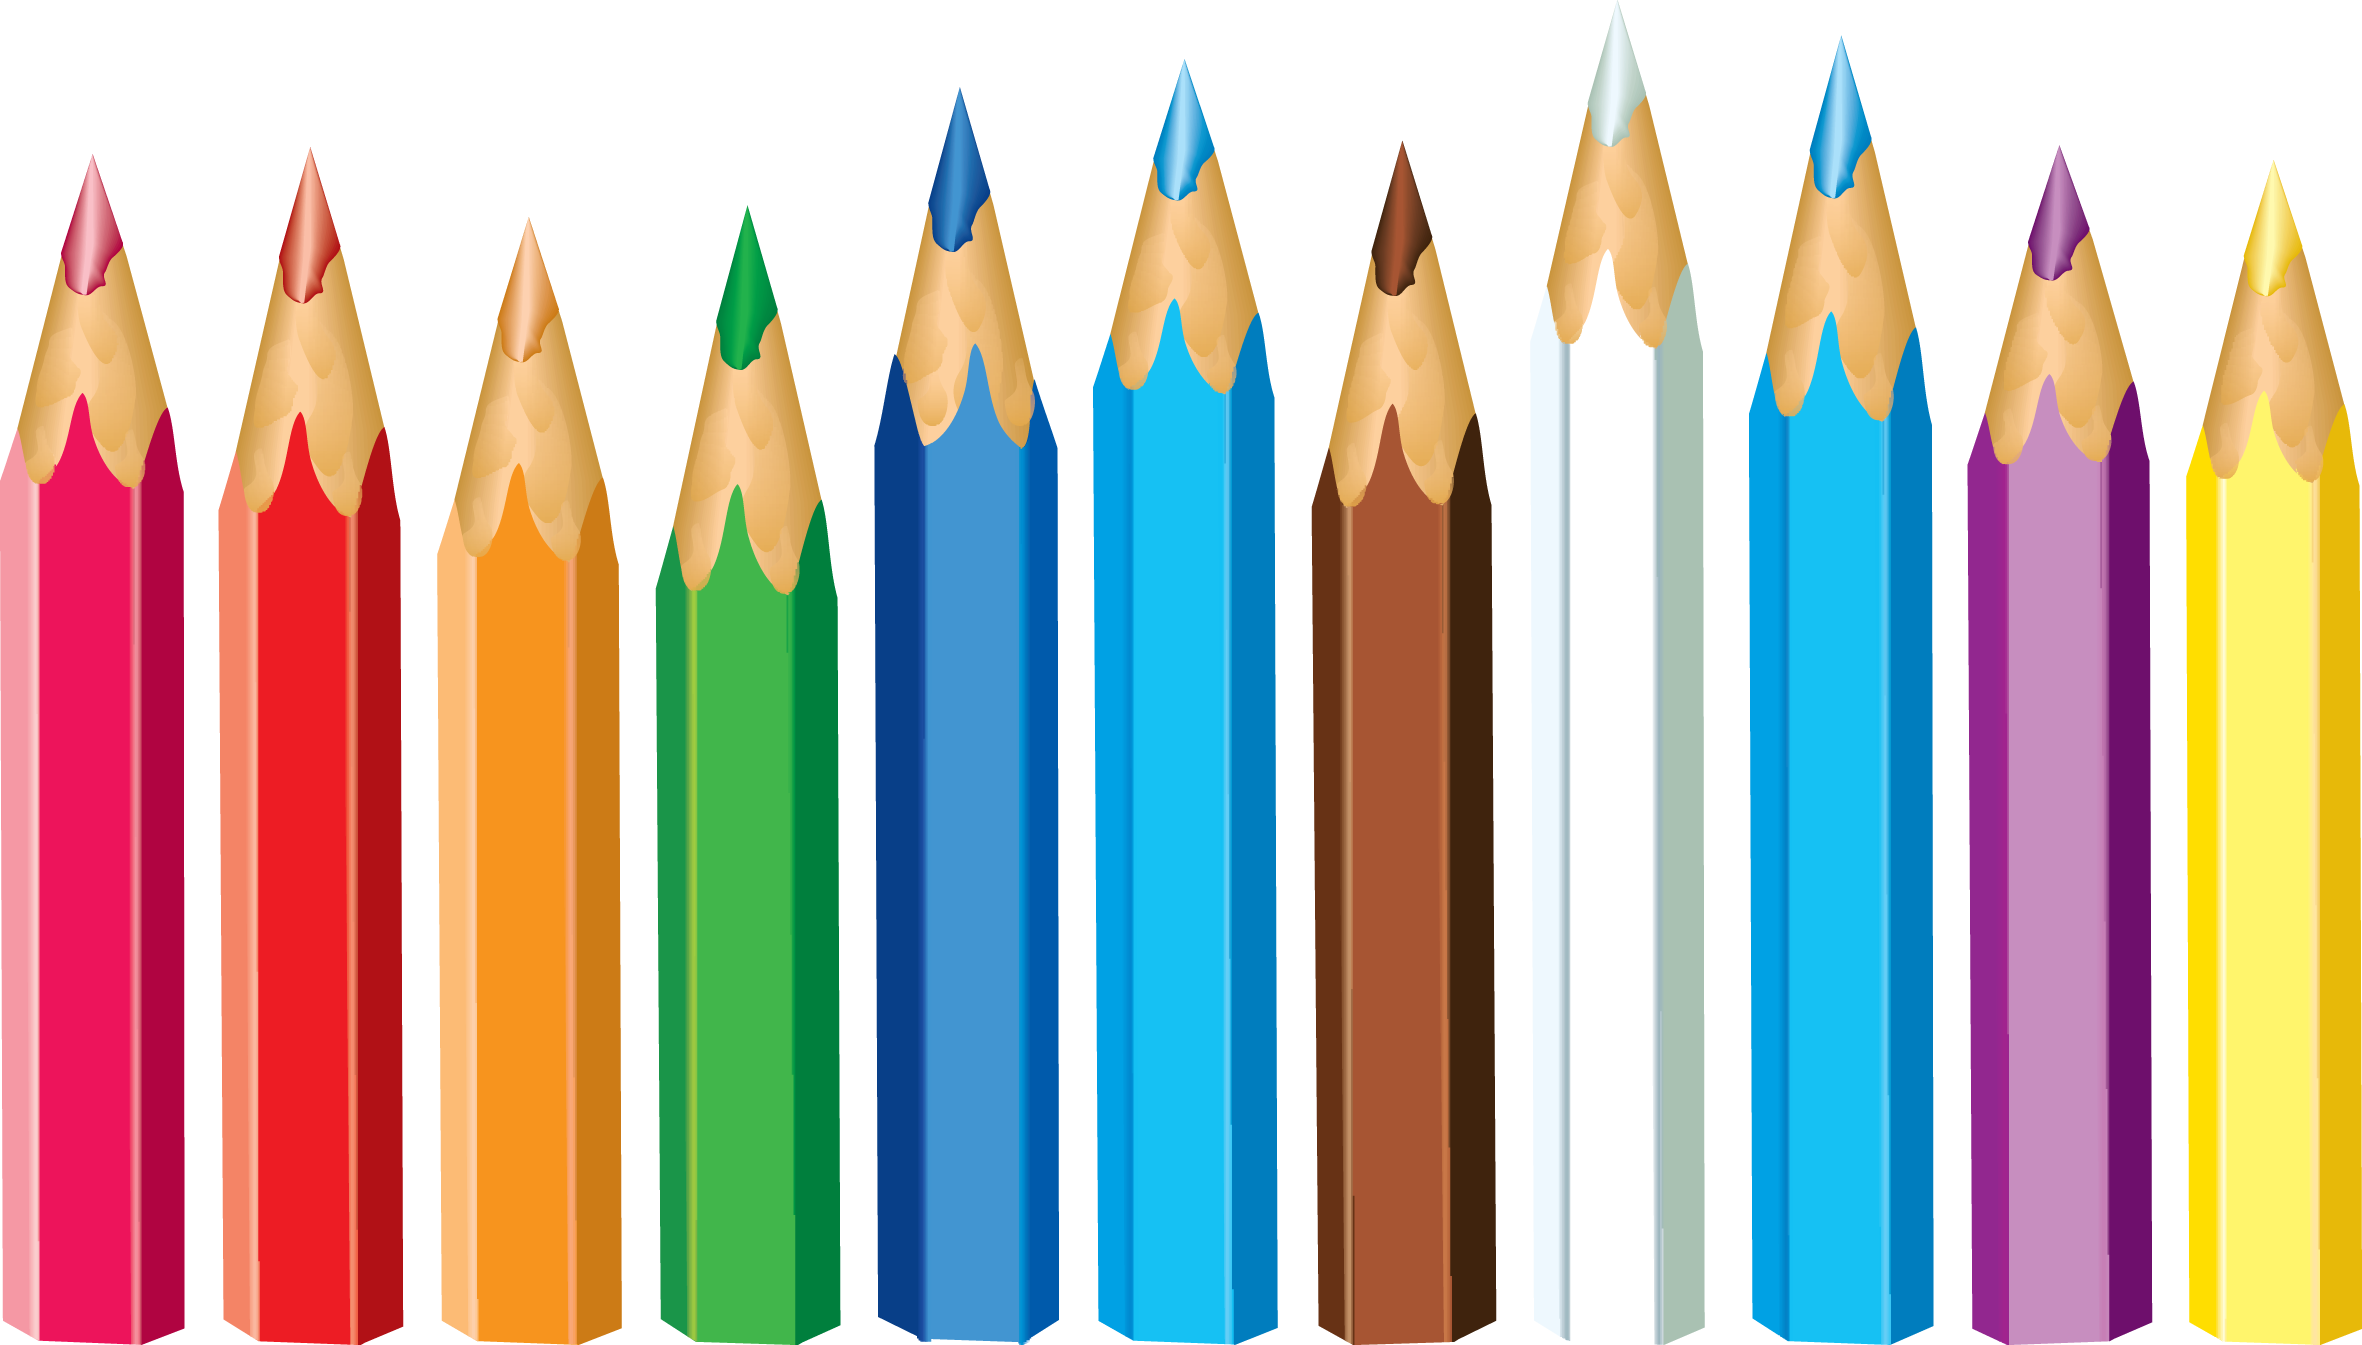 Pencil download. Цветные карандаши колор пенсил. Карандаши мультяшные. Рисование карандашом. Цветные карандаши на белом фоне.